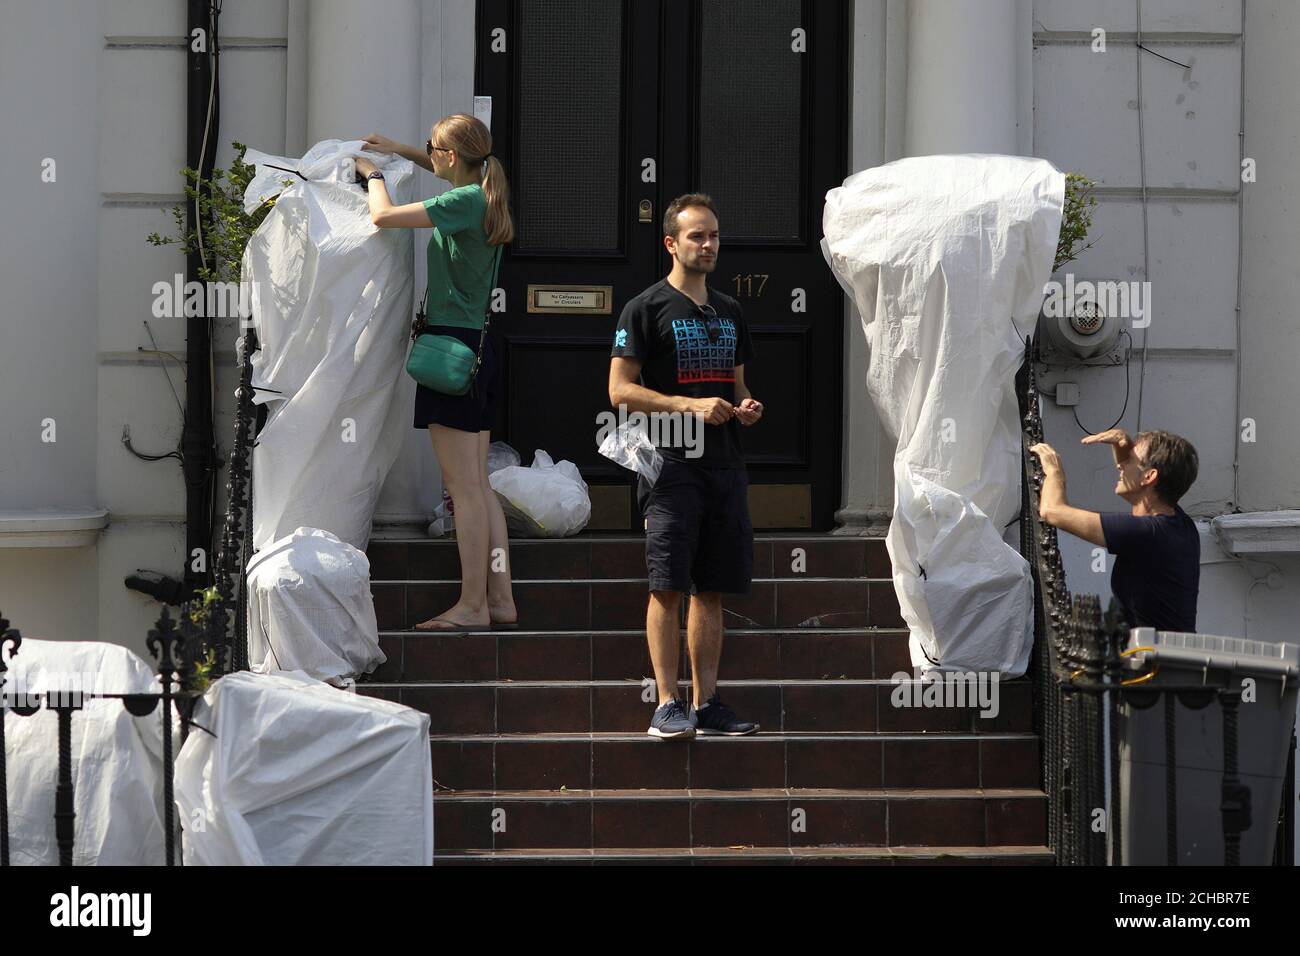 Vor dem Notting Hill Carnival in London, Großbritannien, 24. August 2019, verdecken die Bewohner Pflanzen am Eingang zu Wohnhäusern. REUTERS/Simon Dawson Stockfoto